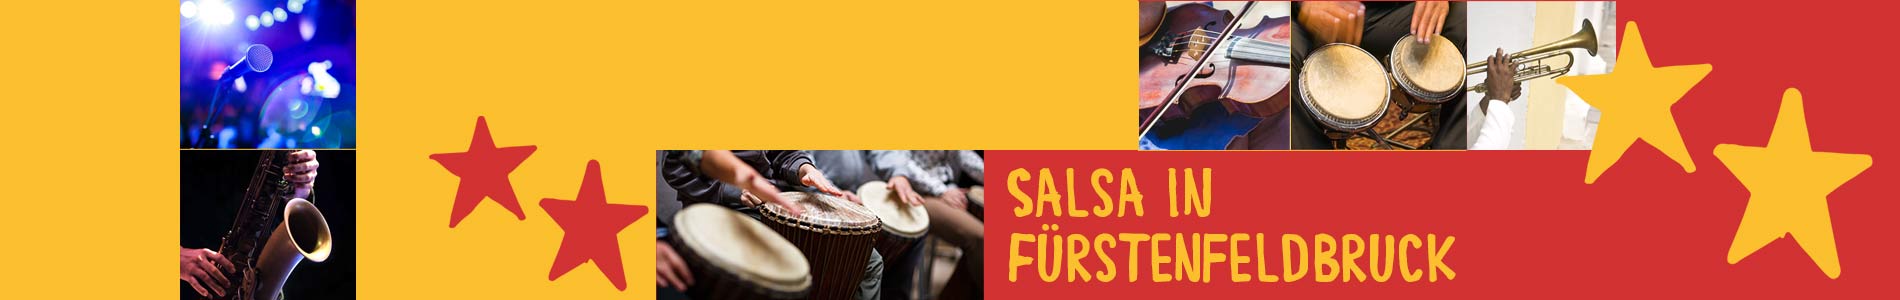 Salsa in Fürstenfeldbruck – Salsa lernen und tanzen, Tanzkurse, Partys, Veranstaltungen